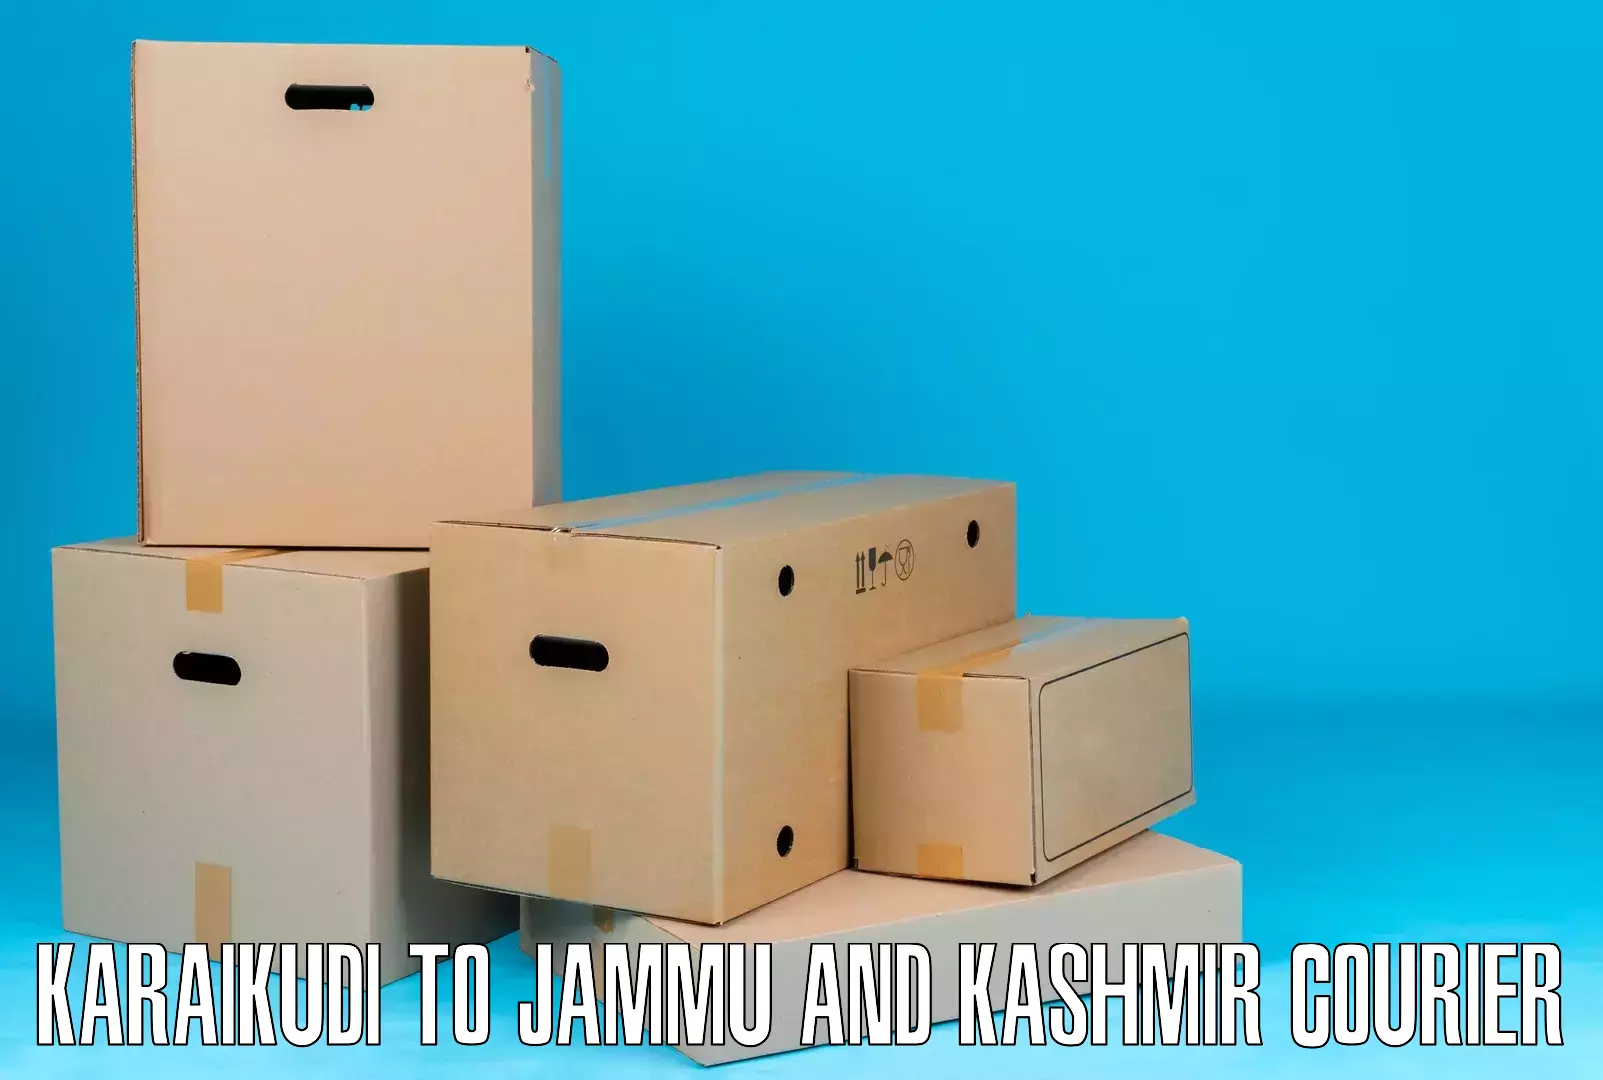 Global delivery options Karaikudi to Kathua